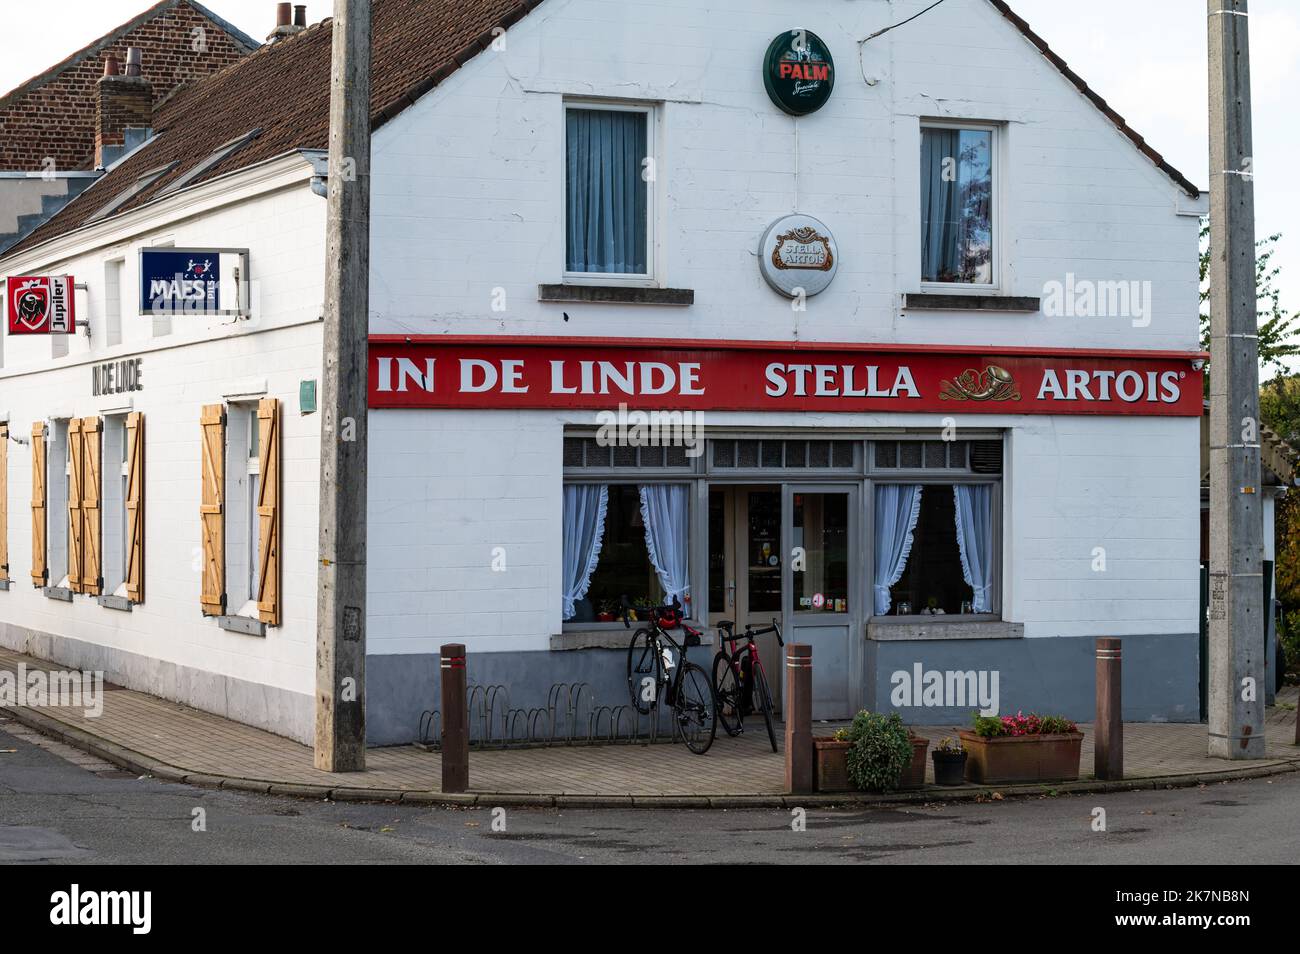 Molenbeek, Regione capitale di Bruxelles, Belgio, 10 16 2022 - un pub locale chiamato in De Linde che vende la birra Stella Artois Foto Stock